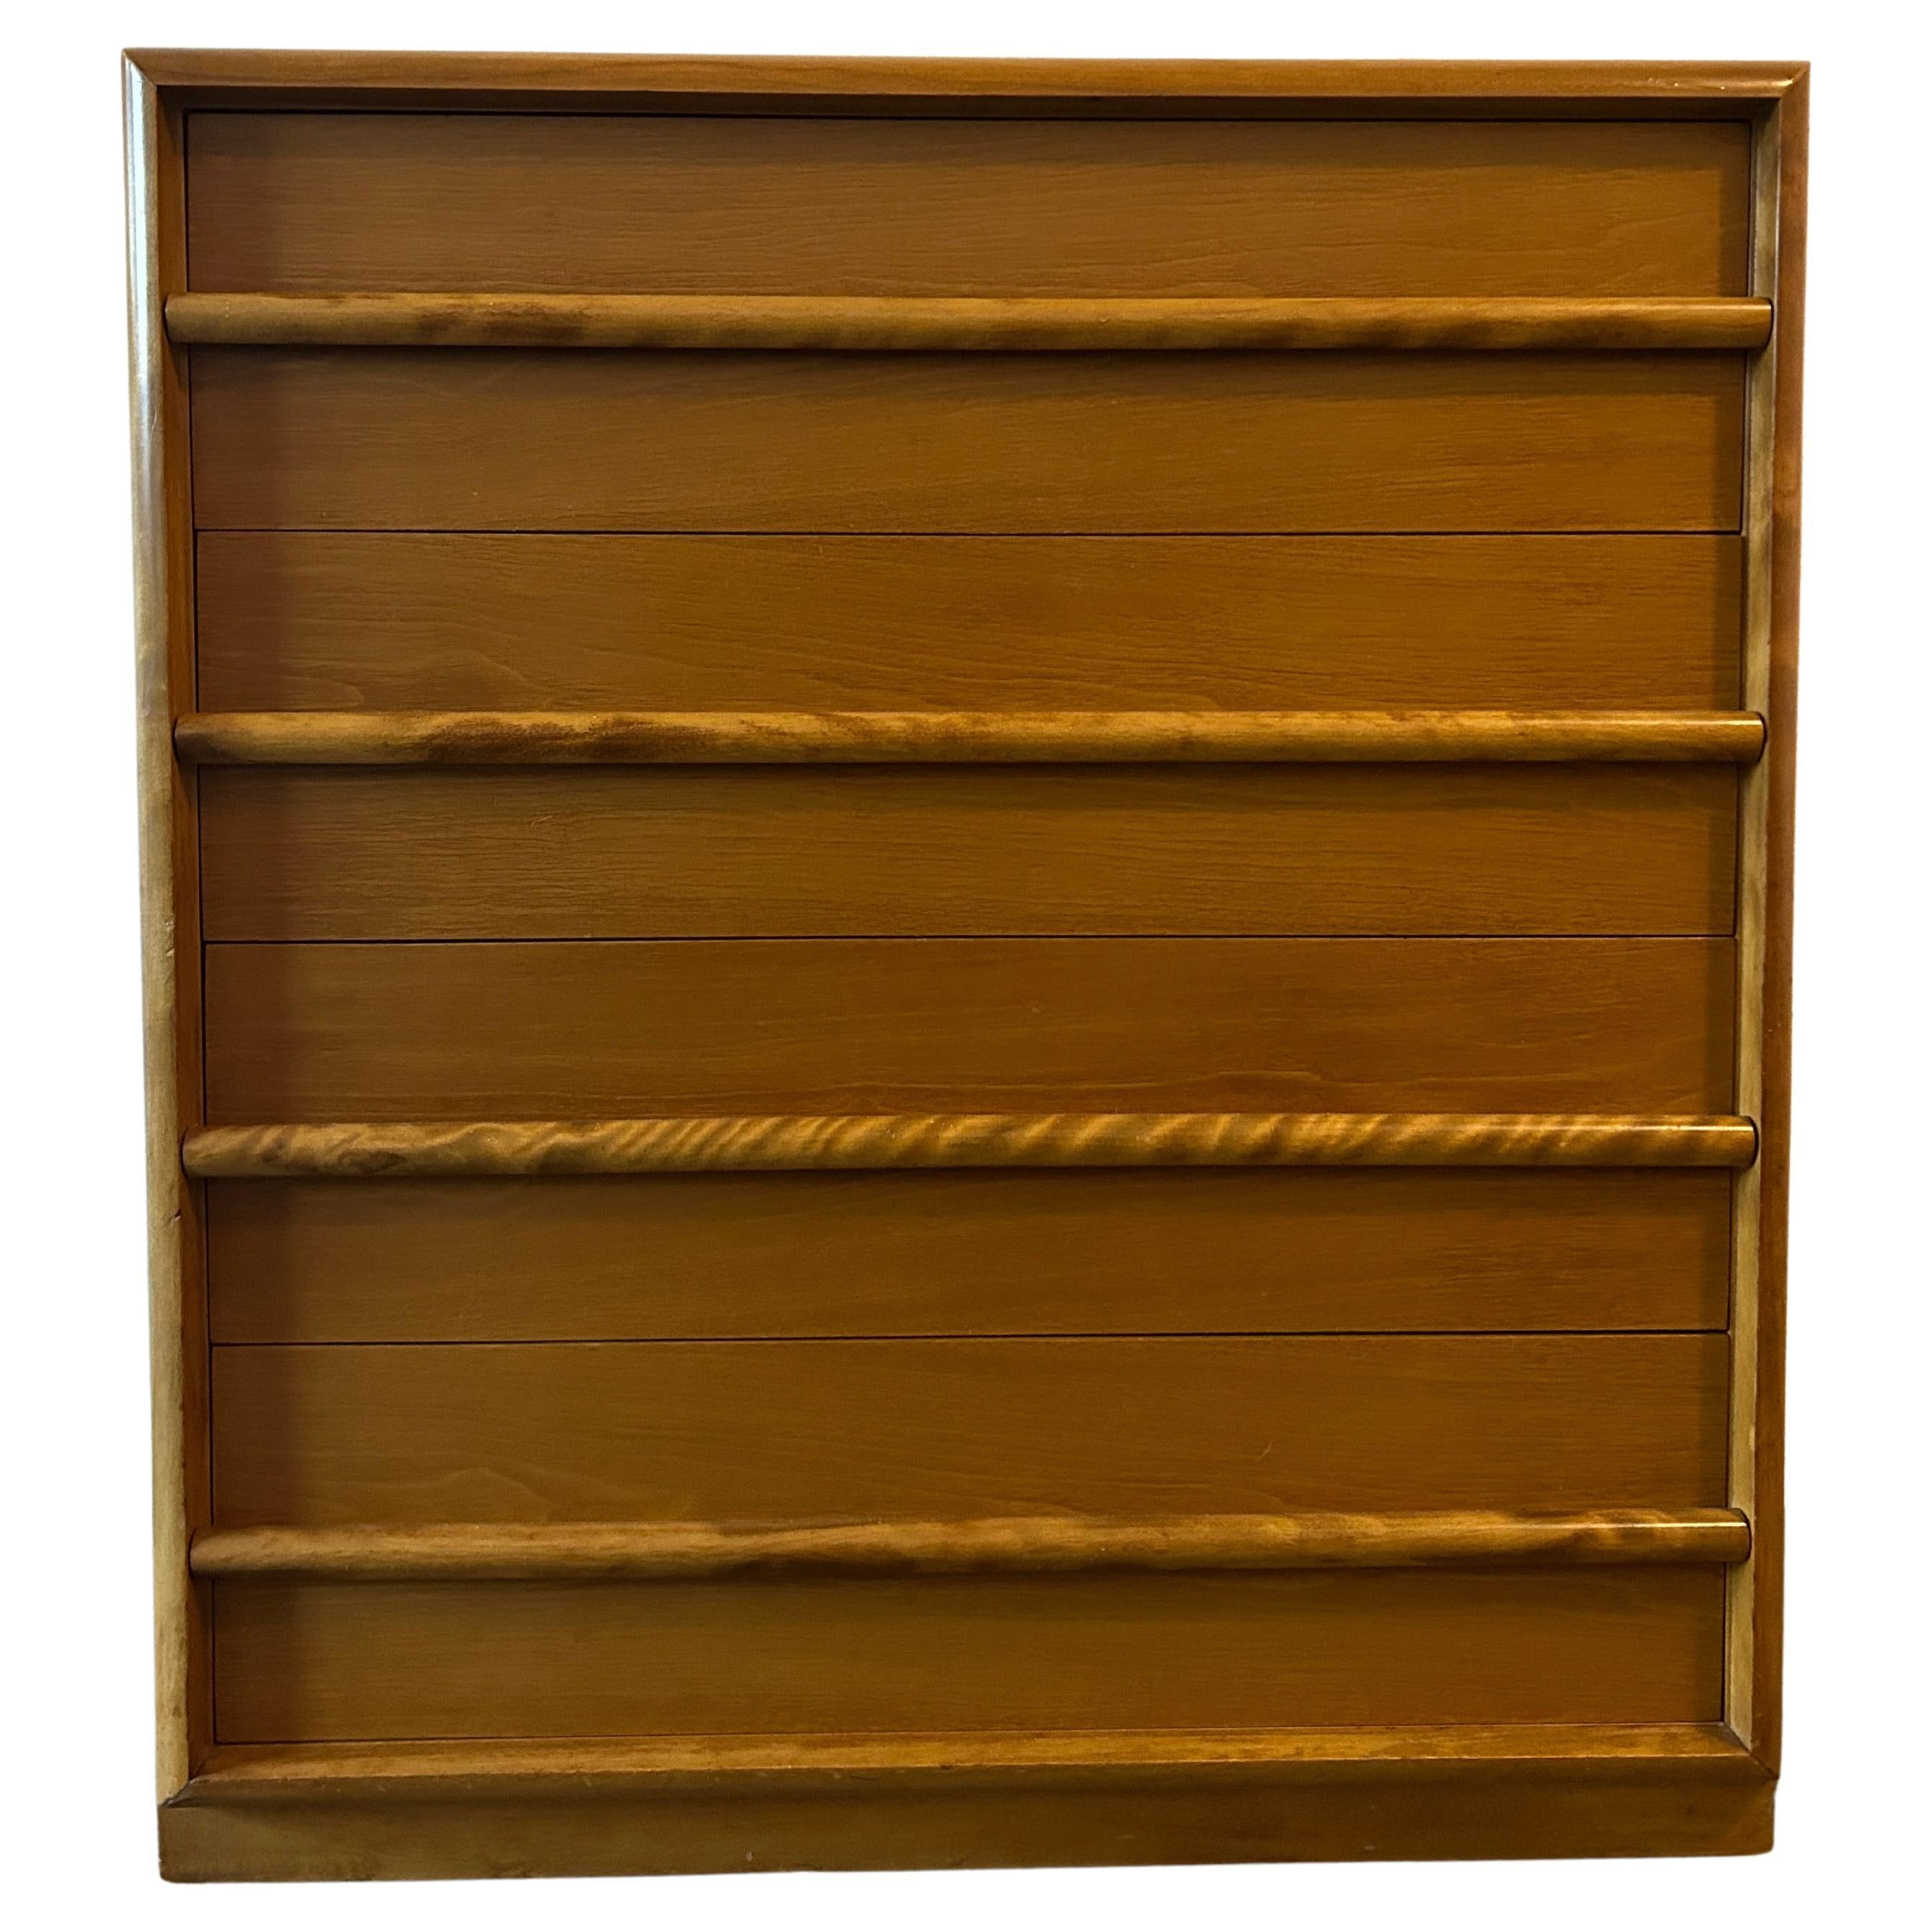 Wonderful Maple 4 Drawer Tall Dresser by T.H. Robsjohn-Gibbings for Widdicomb